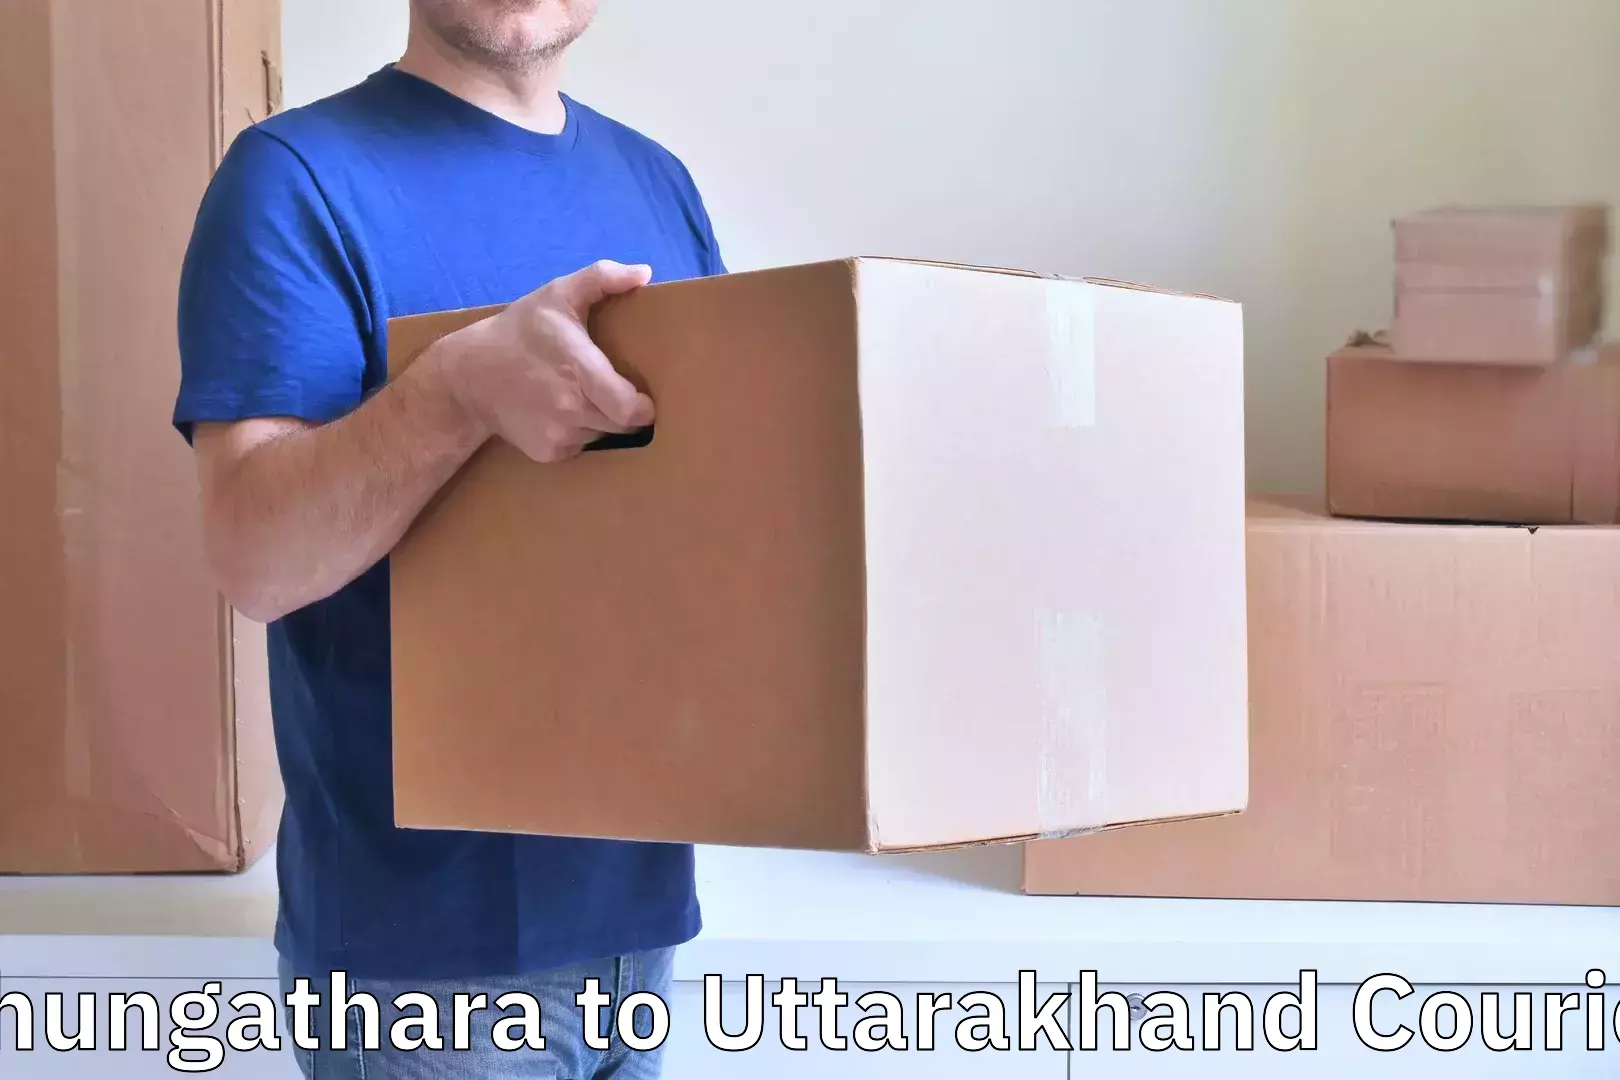 Baggage courier insights Chungathara to Gairsain